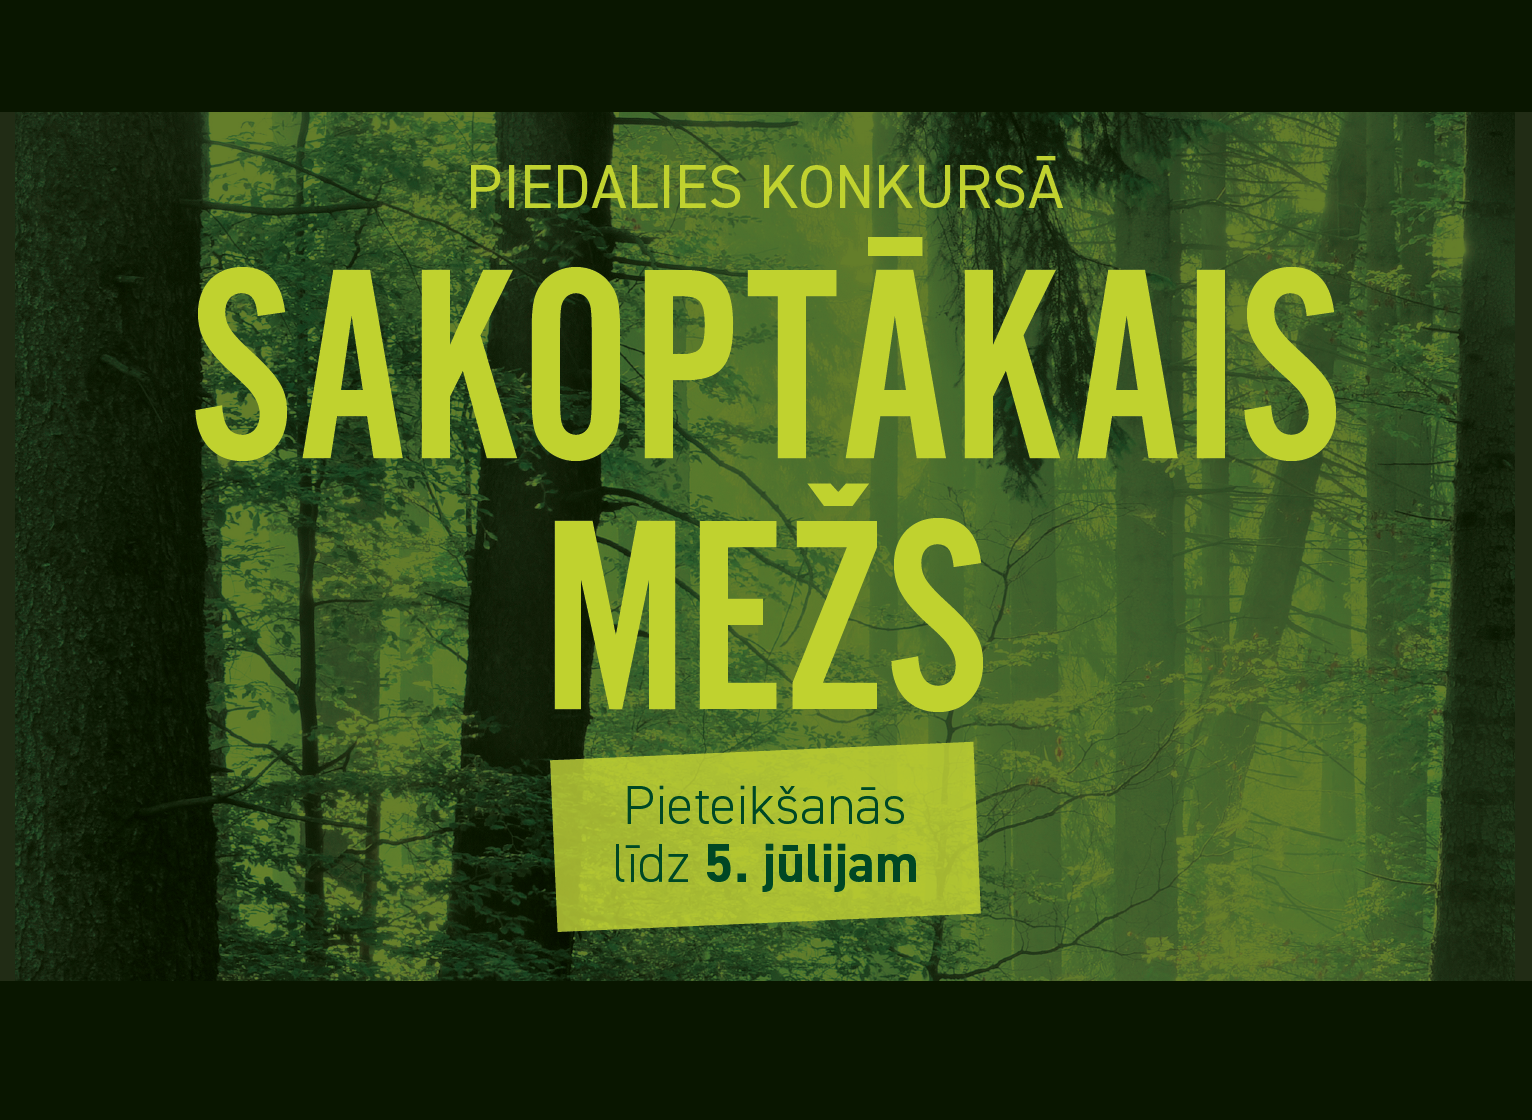 Latvijas Meža īpašnieku biedrība aicina mežsaimniekus piedalīties konkursā „Sakoptākais mežs”